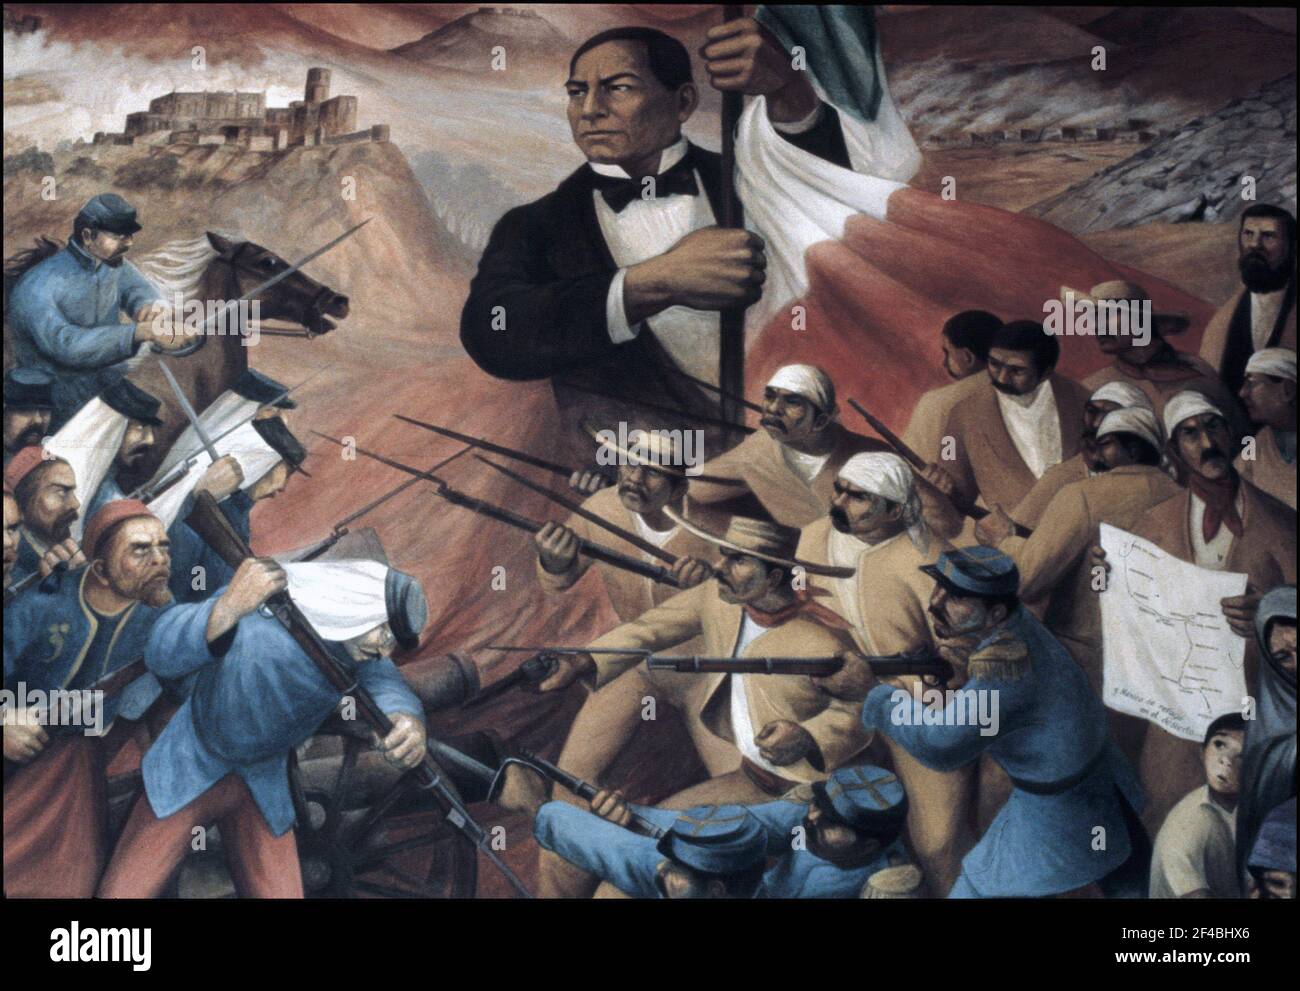 JUAREZ , BENITO. POLITICO MEXICANO. 1806-1872. JUAREZ SIMBOLO DE LA REPUBLICA CONTRA LA INTERVENCION FRANCESA - 1972 . JOSE CLEMENTE OROZCO. MURAL EN EL MUSEO NACIONAL DE HISTORIA DE MEXICO , 1972. ATENCION: AUTOR CONTEMPORANEO SUJETO A COPYRIGHT ©. EL CLIENTE FINAL ES RESPONSABLE DE LA GESTION DE LOS DERECHOS DE AUTOR CON LAS SOCIEDADES EXISTENTES DE GESTION DE DERECHOS O DIRECTAMENTE CON LOS ORGANISMOS TITULARES DE LOS MISMOS. Author: ANTONIO GONZALEZ OROZCO. Stock Photo